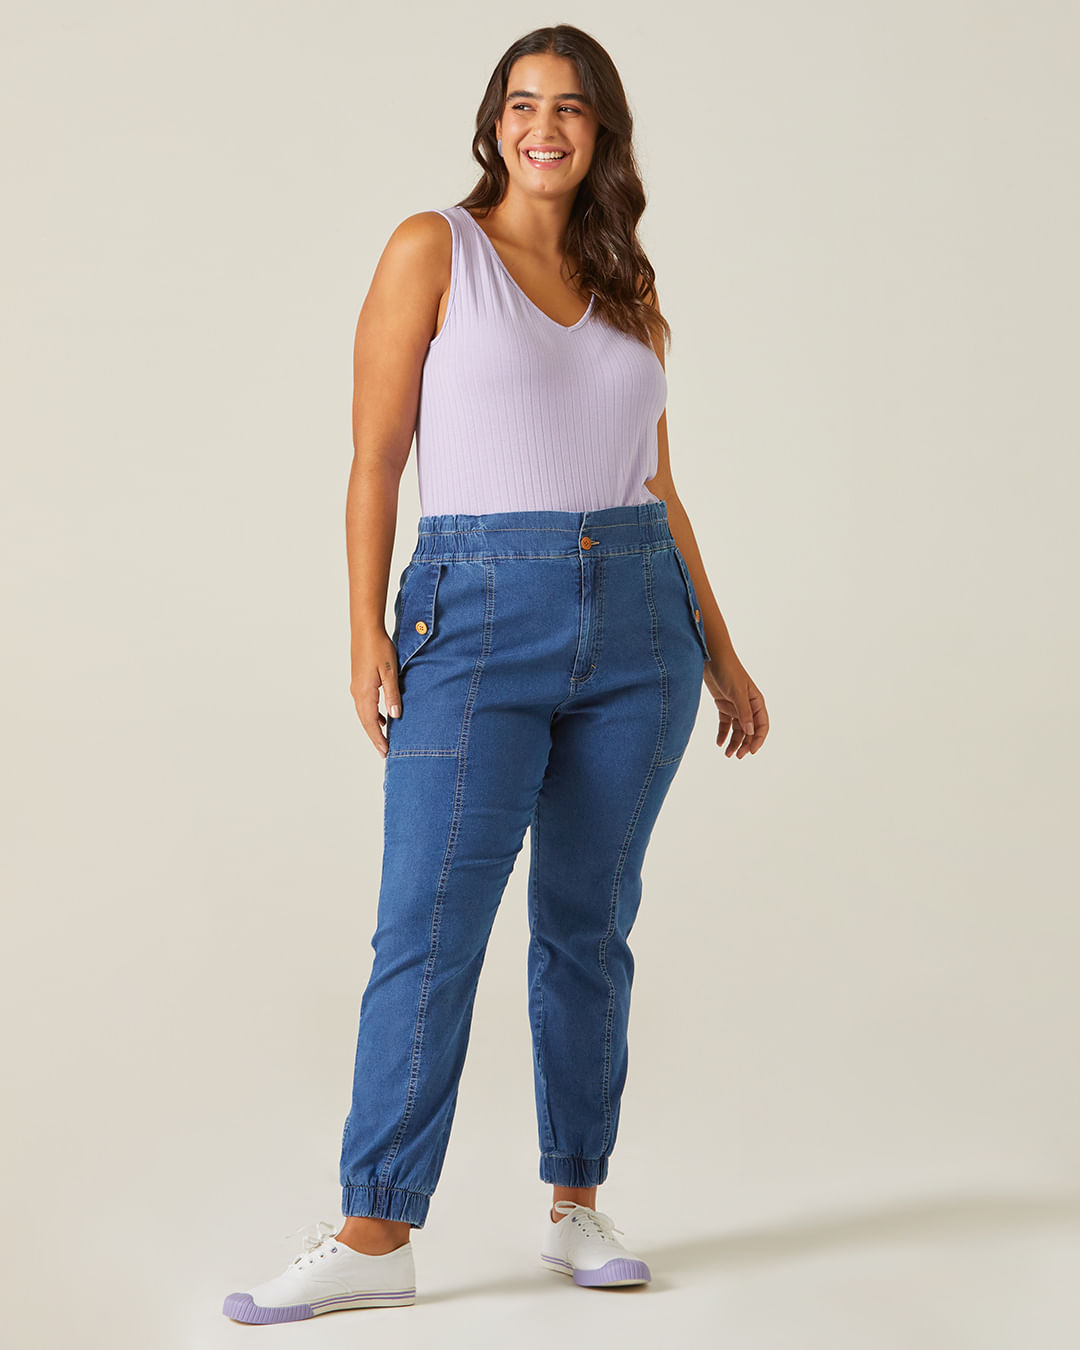 Calça Jeans Plus Size Feminina